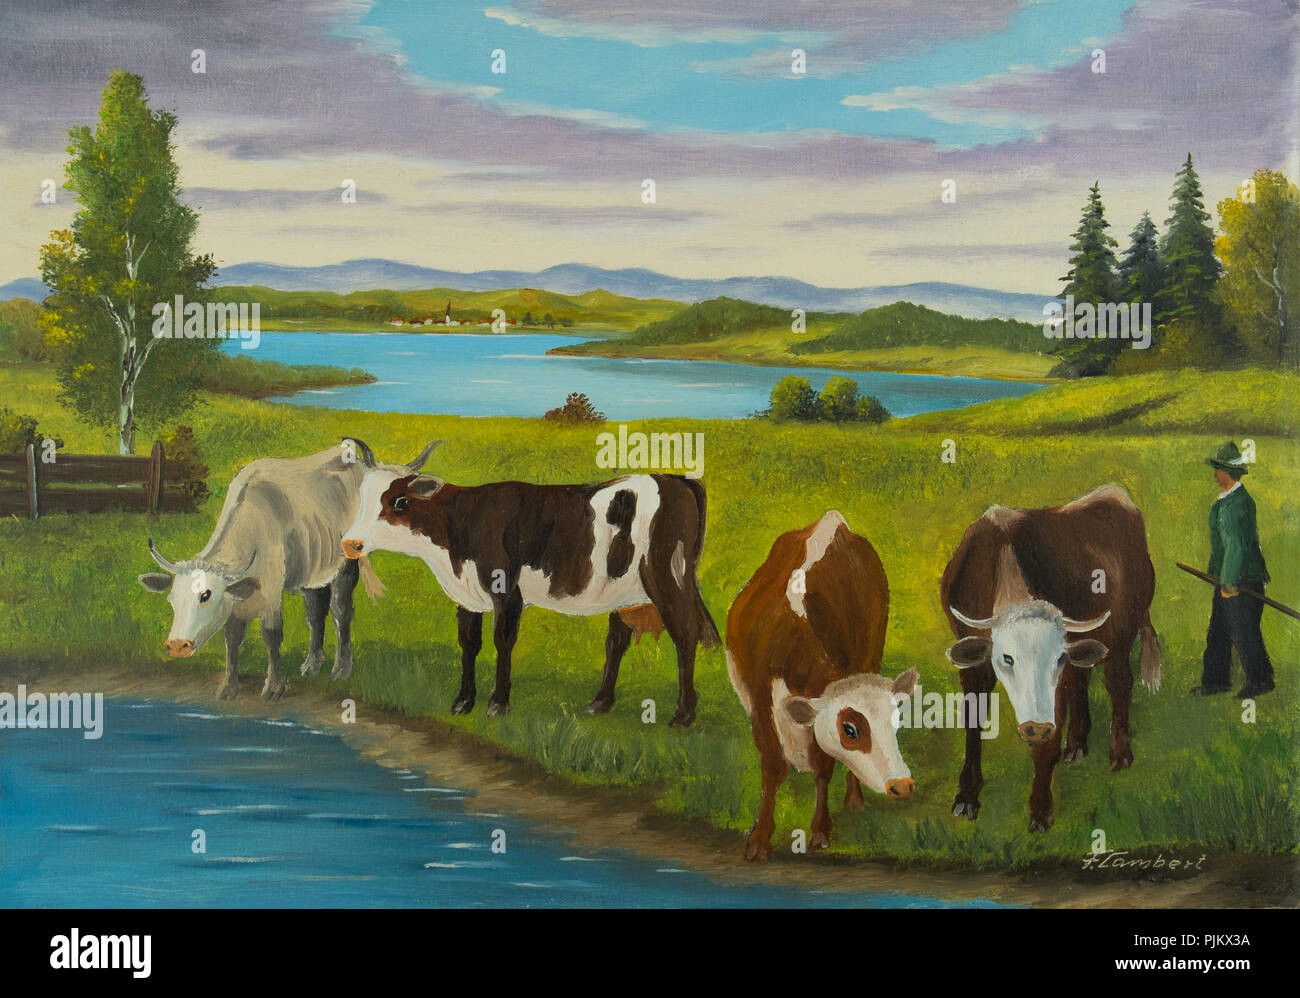 Peindre avec des peintures à l'huile de différents farmer à boire à l'eau Banque D'Images